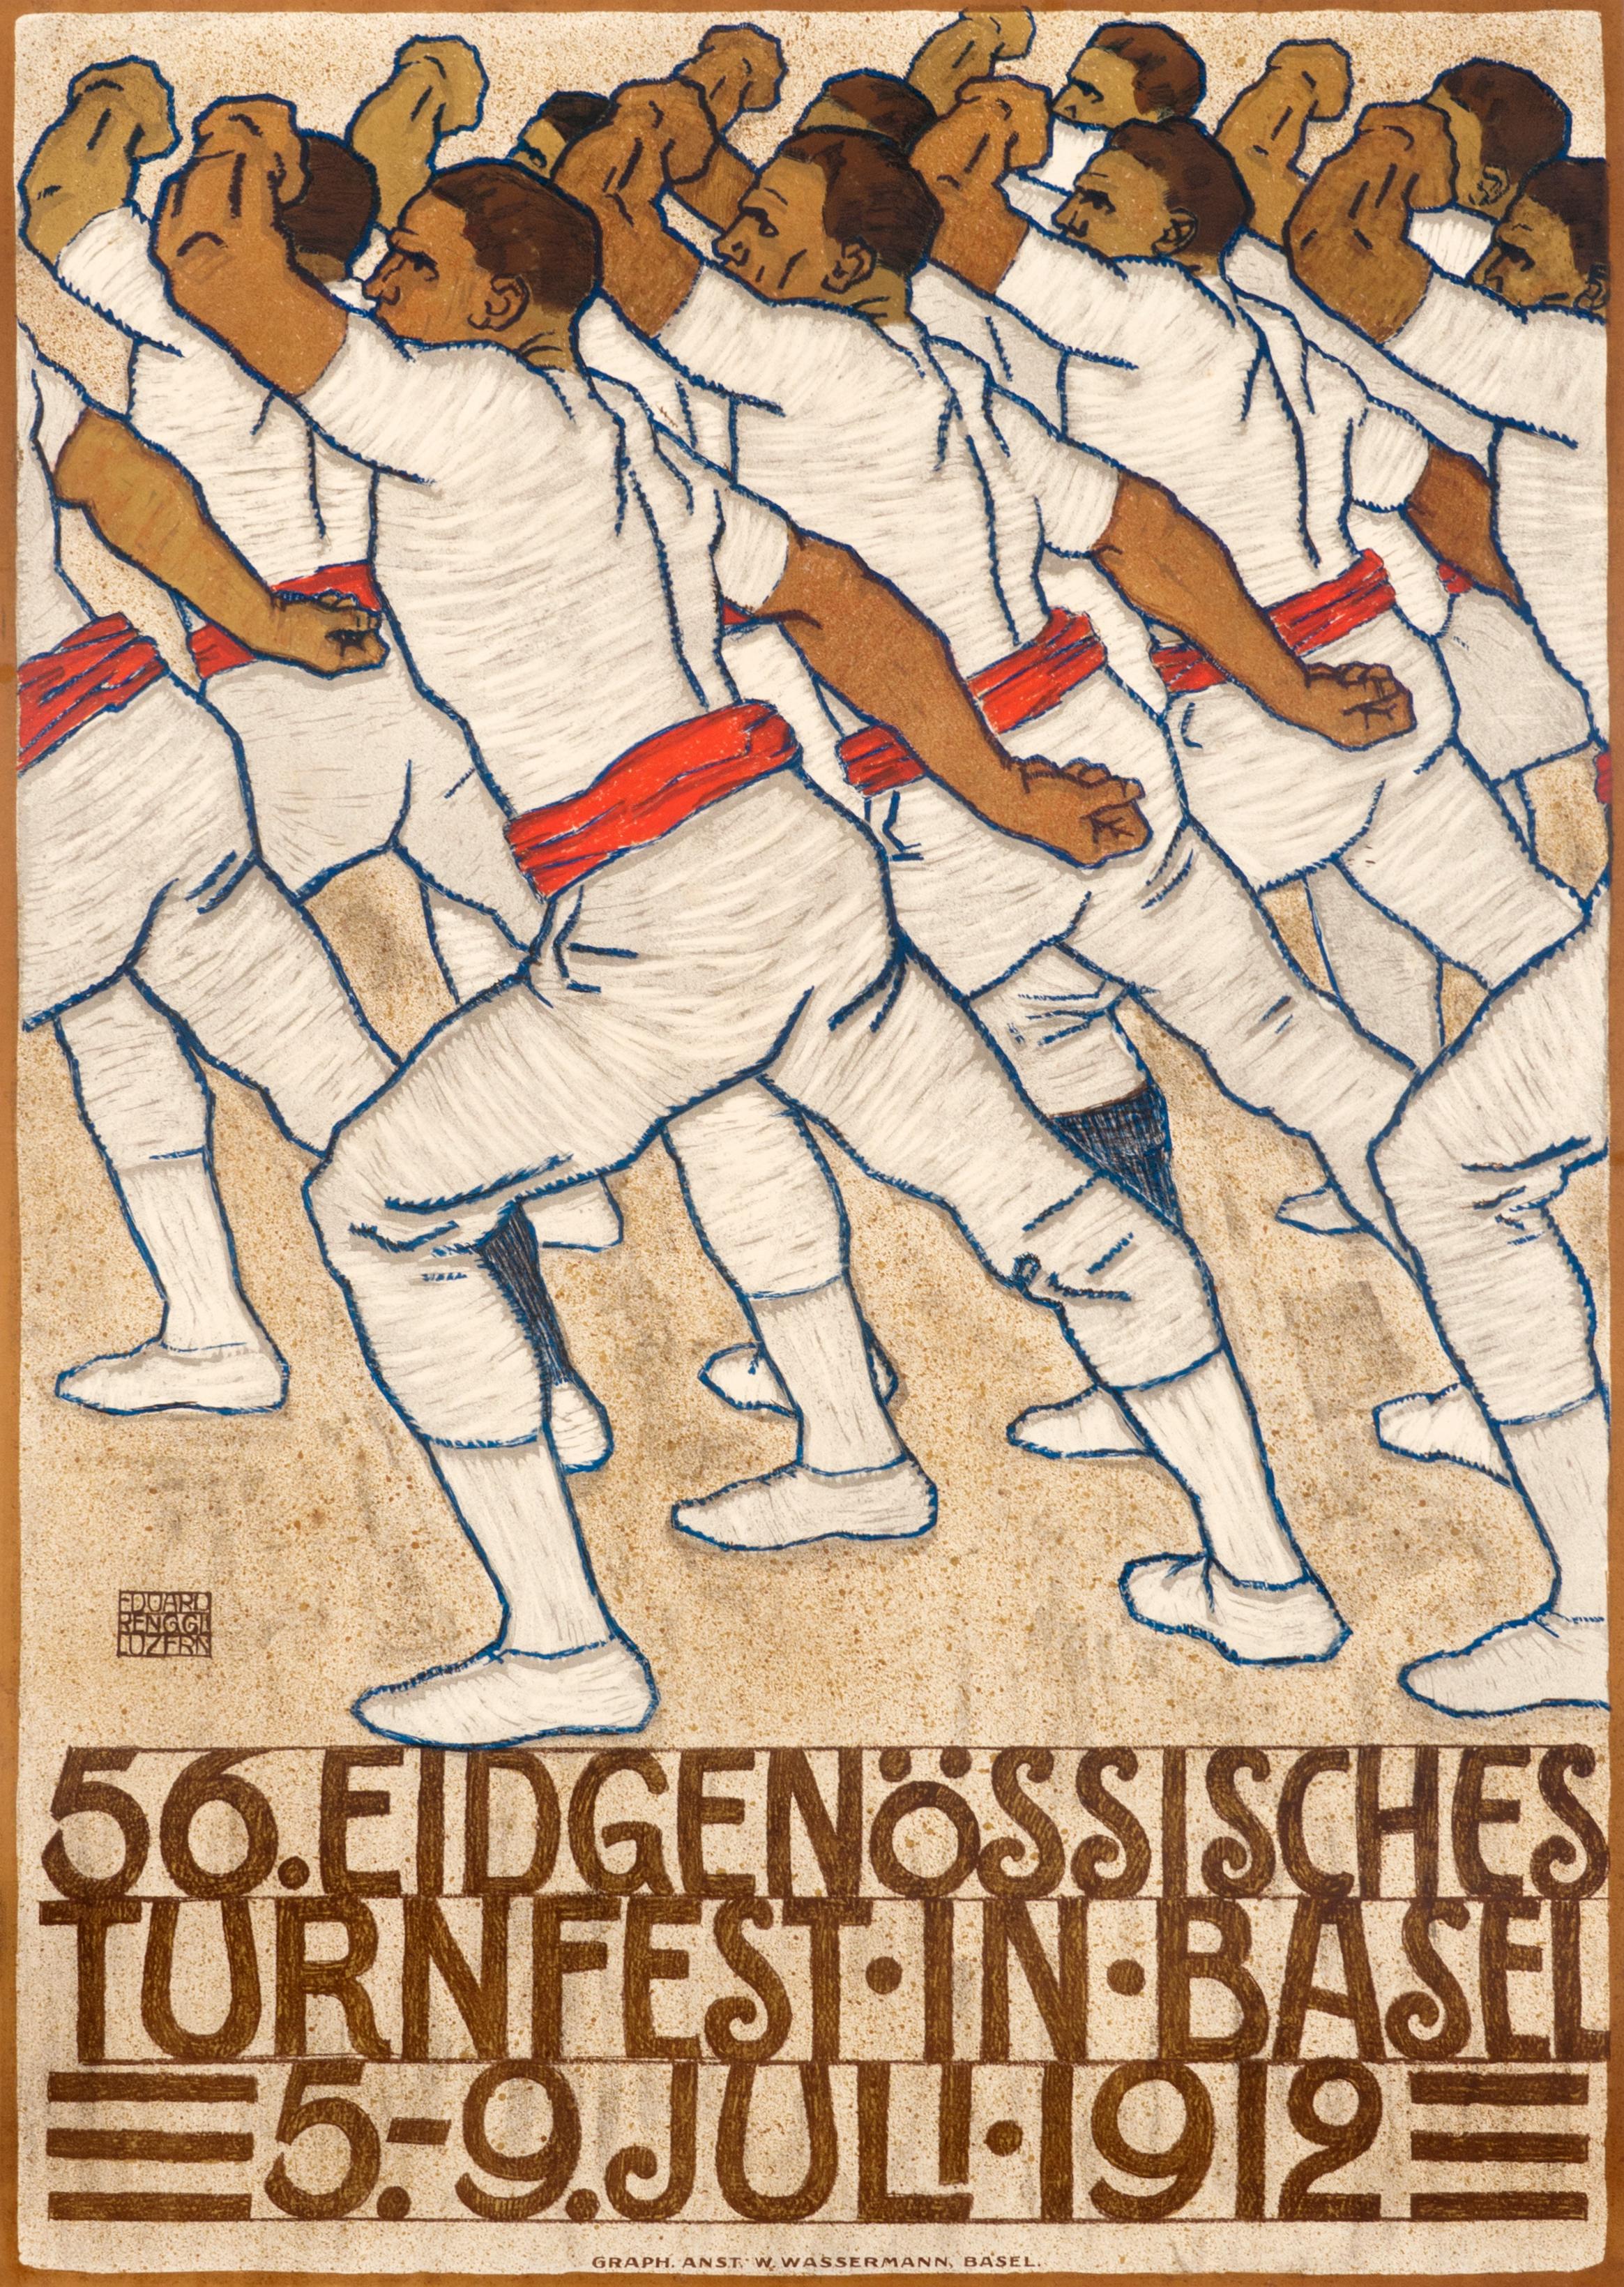 "56. Eidgenossisches Turnfest in Basel" Original Antique Swiss Gymnastics Poster - Print by Eduard Renggli